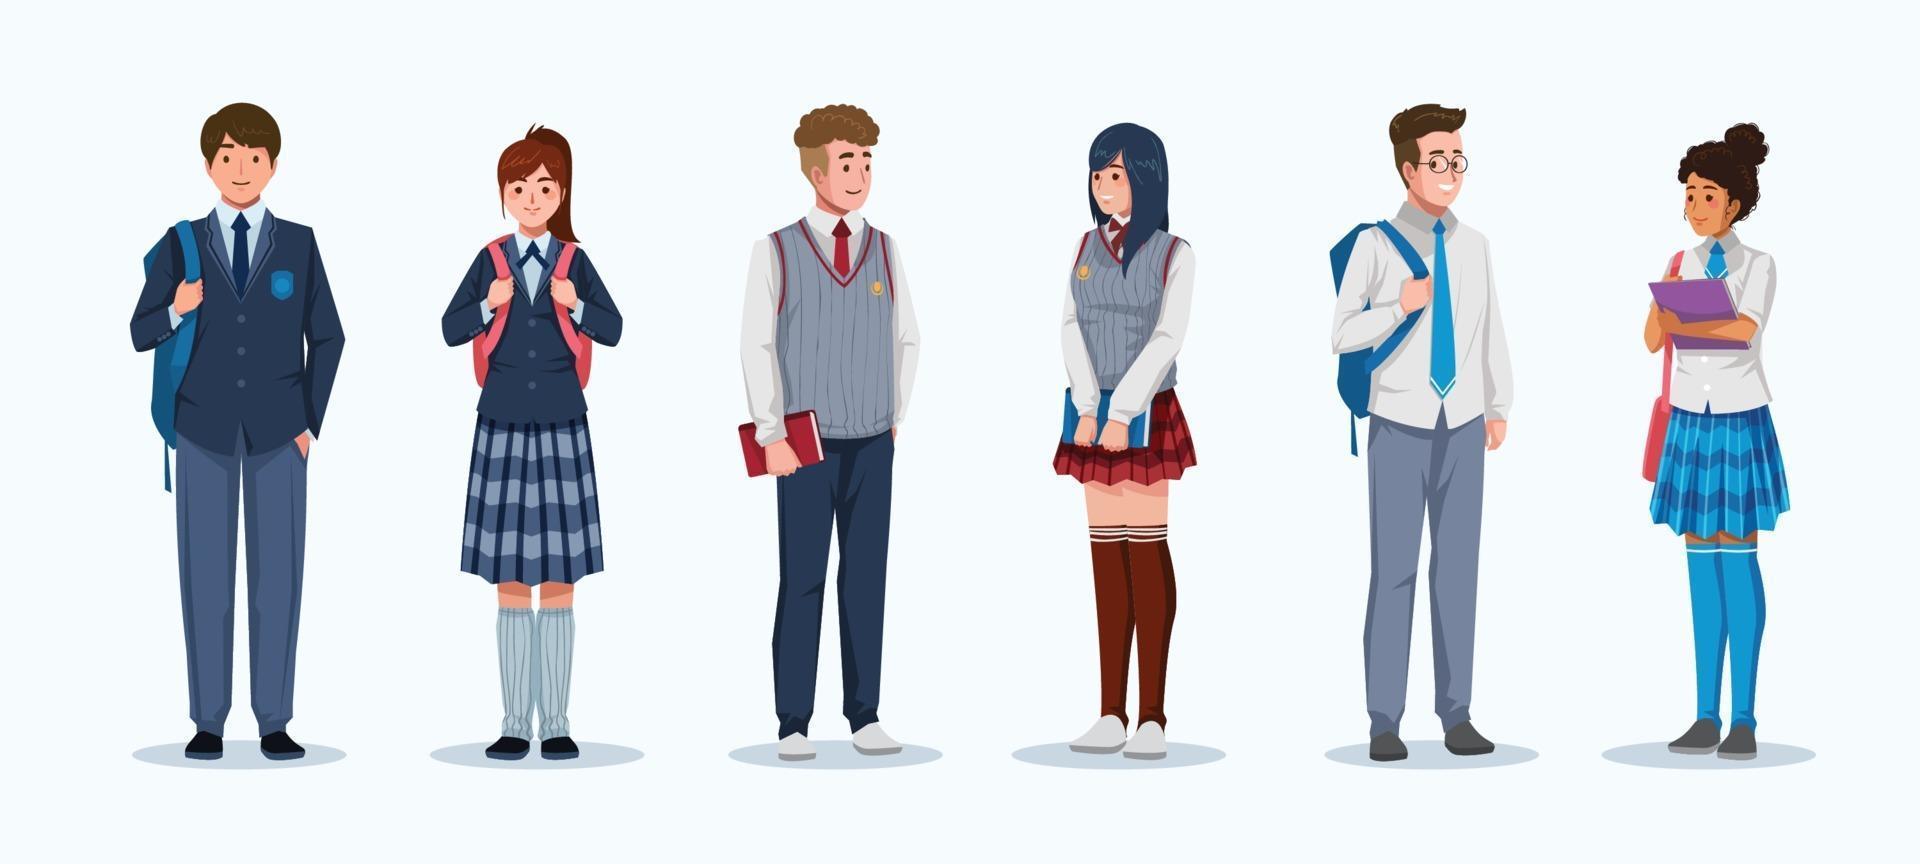 conceito de personagem de alunos do ensino médio com coleção de uniformes vetor